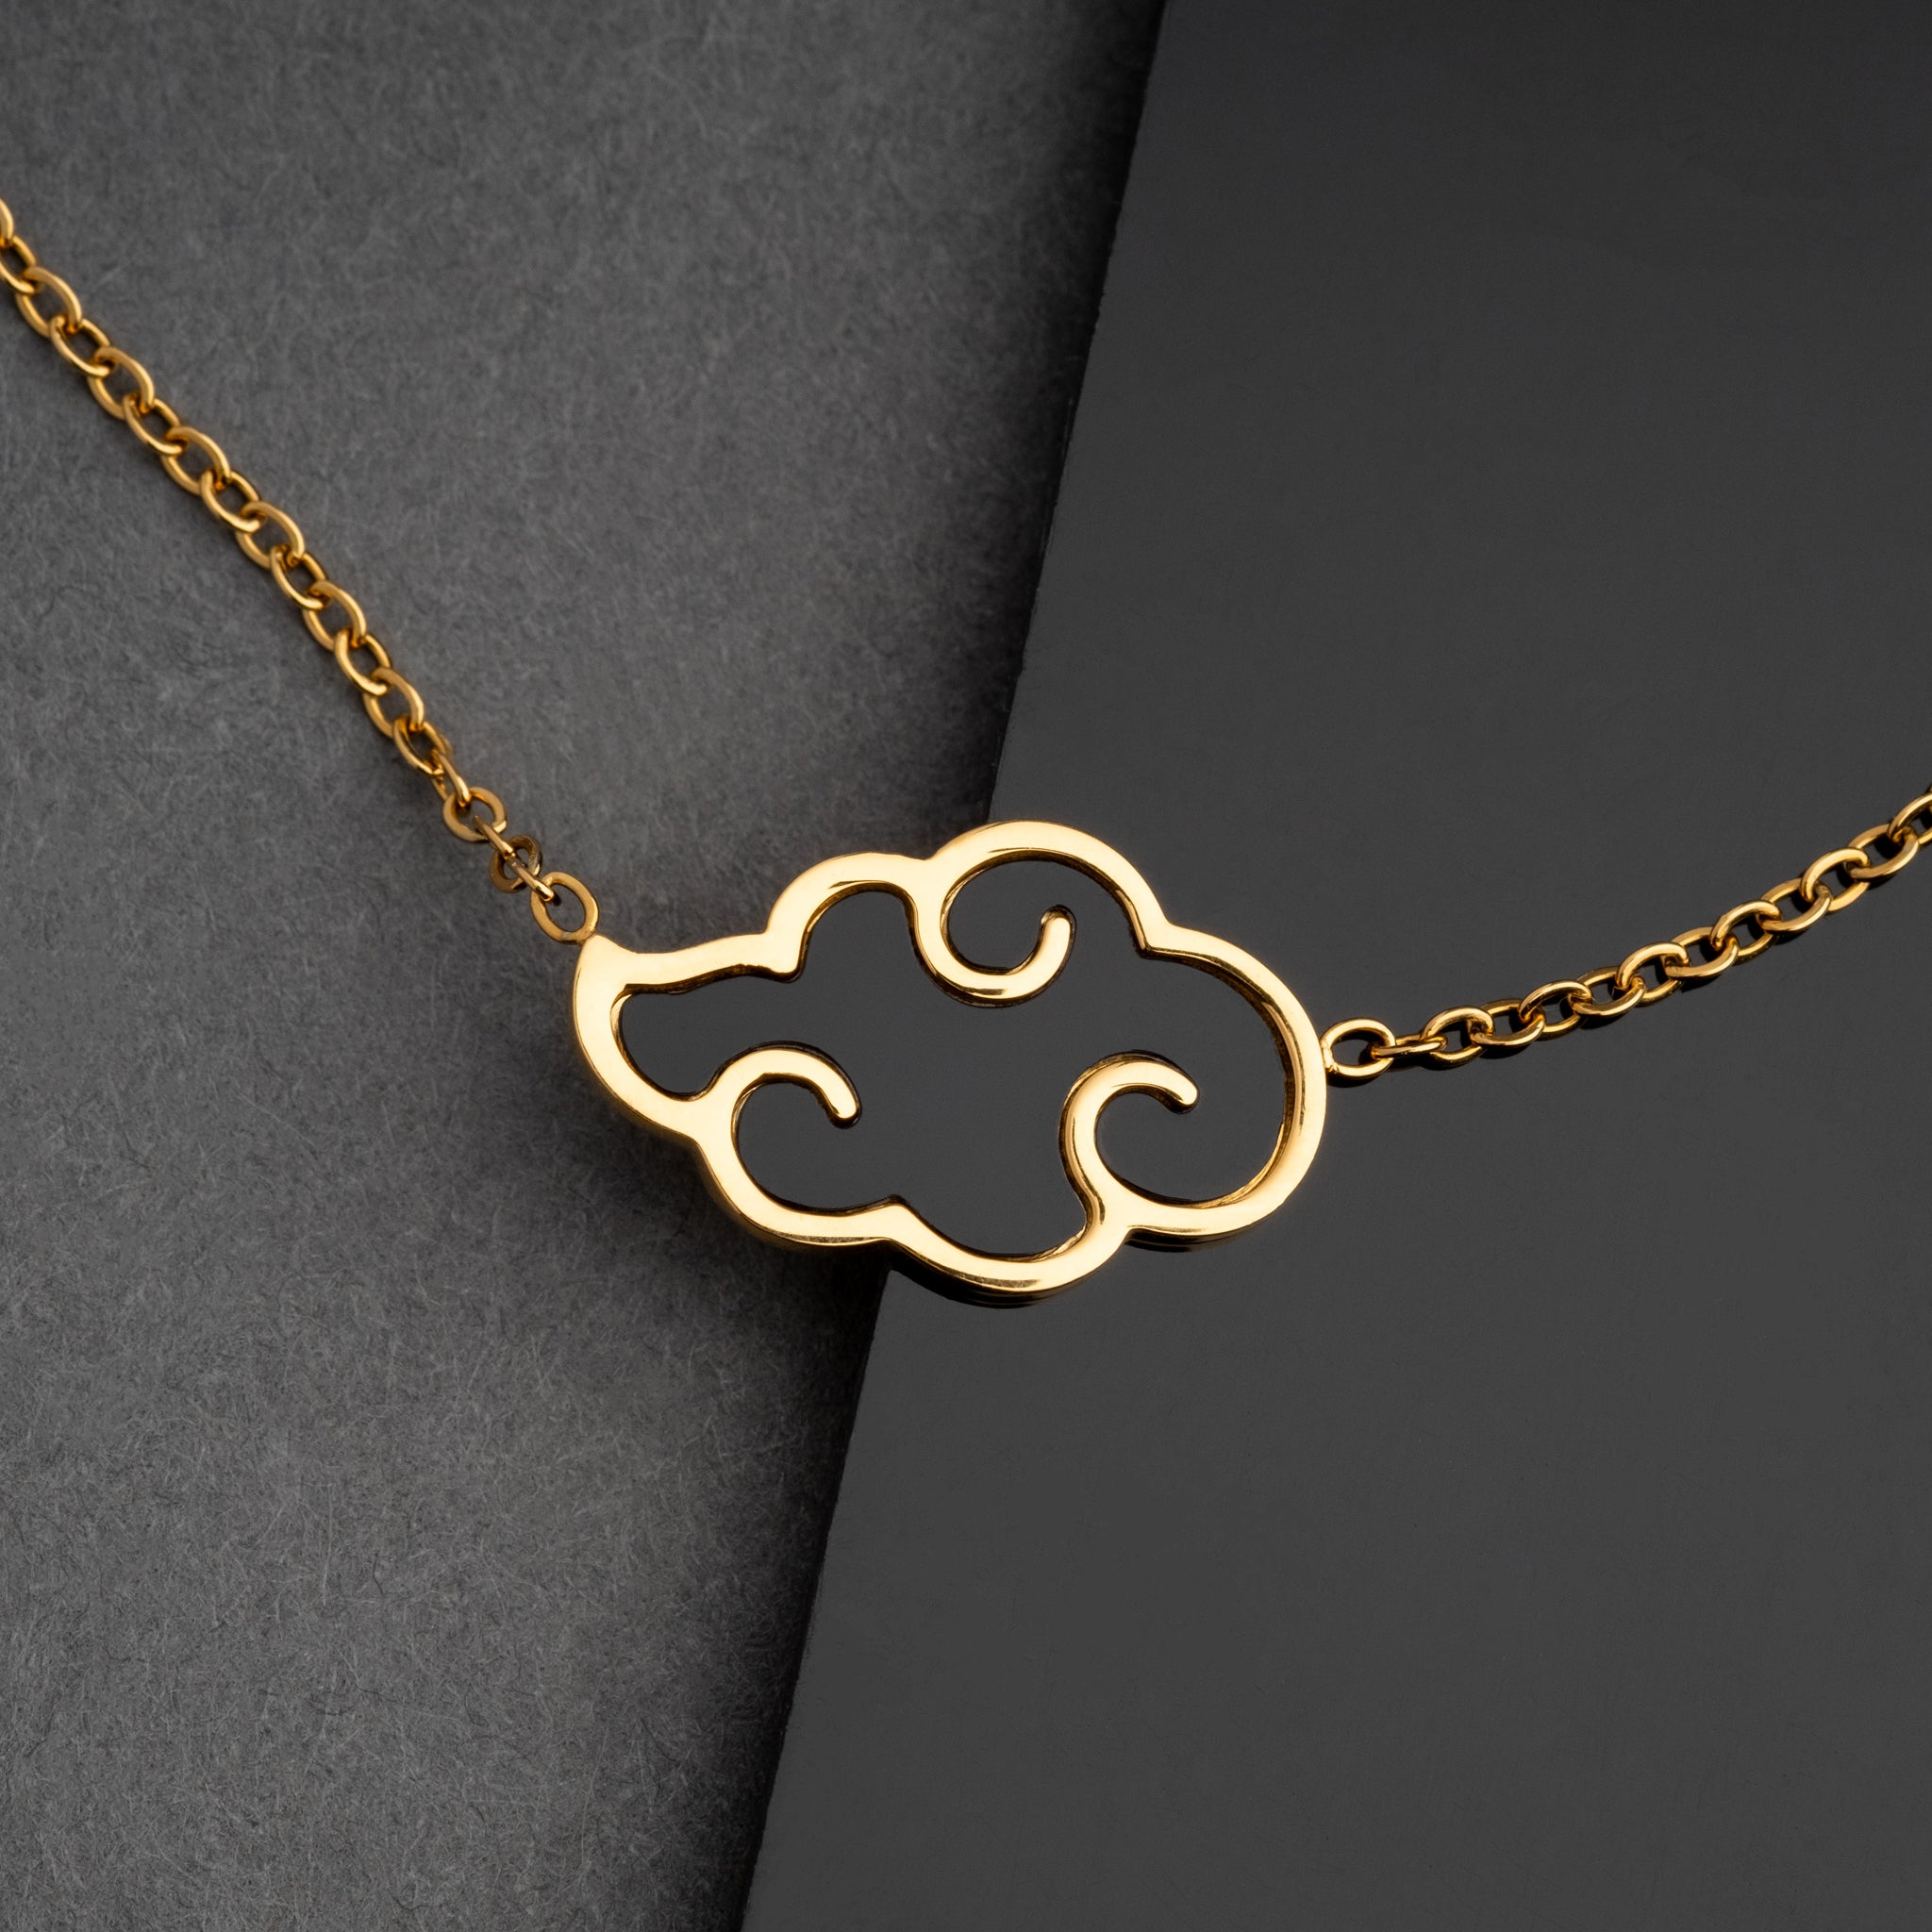 Akatsuki Cloud Bracelet + Necklace Set - Naruto - 18K Gold Plated